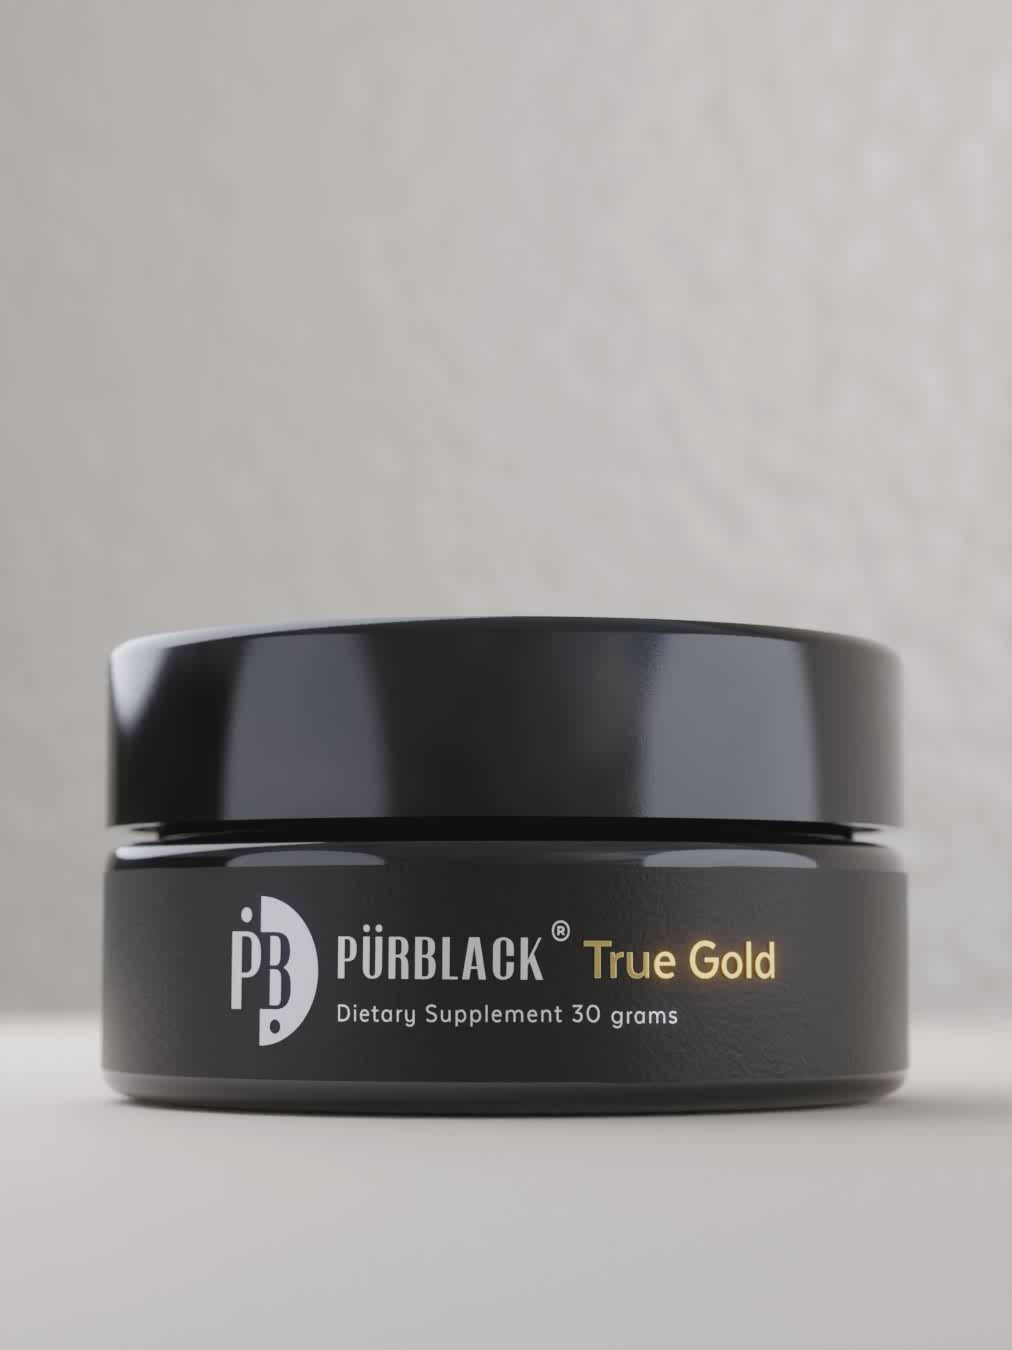 Pürblack Shilajit Live Resin with True Gold 555 PPM, 30 grams